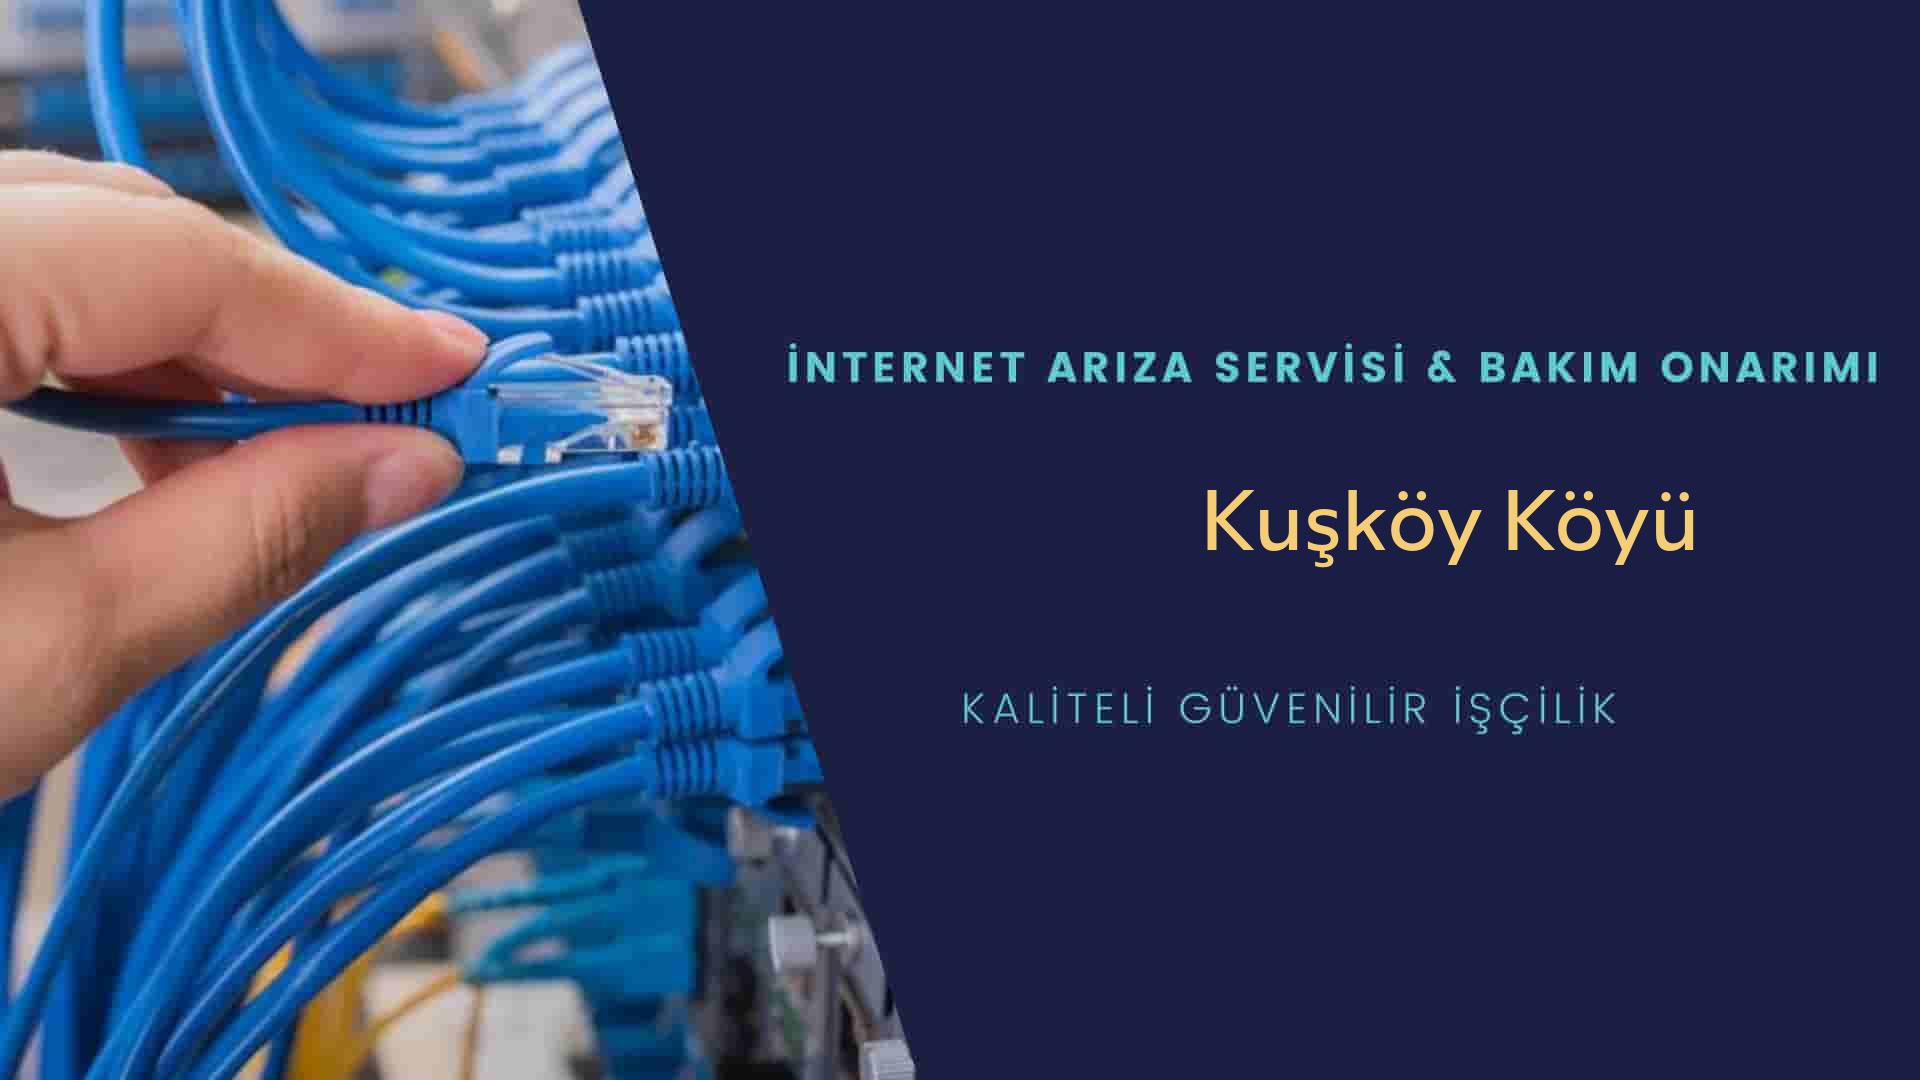 Kuşköy Köyü internet kablosu çekimi yapan yerler veya elektrikçiler mi? arıyorsunuz doğru yerdesiniz o zaman sizlere 7/24 yardımcı olacak profesyonel ustalarımız bir telefon kadar yakındır size.